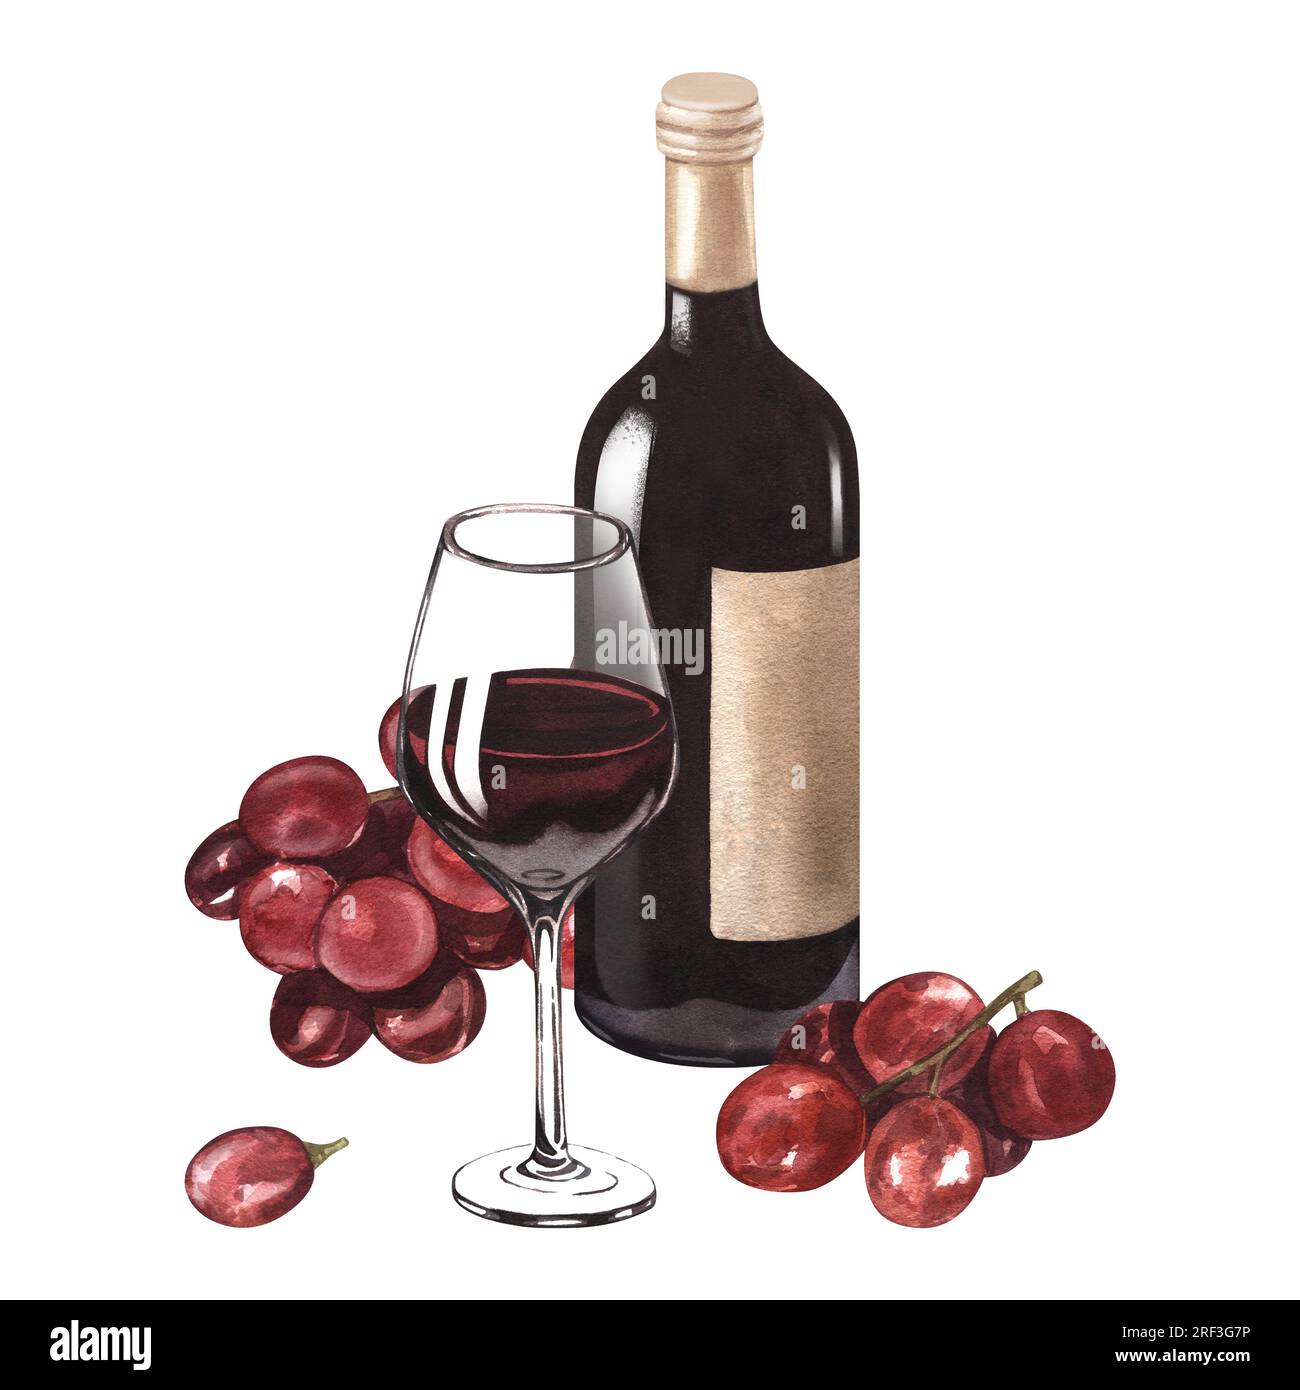 Illustration à l'aquarelle de la bouteille de vin rouge, du verre de vin et du raisin. Photo d'une boisson alcoolisée isolée sur fond blanc. Concept pour le vin Banque D'Images